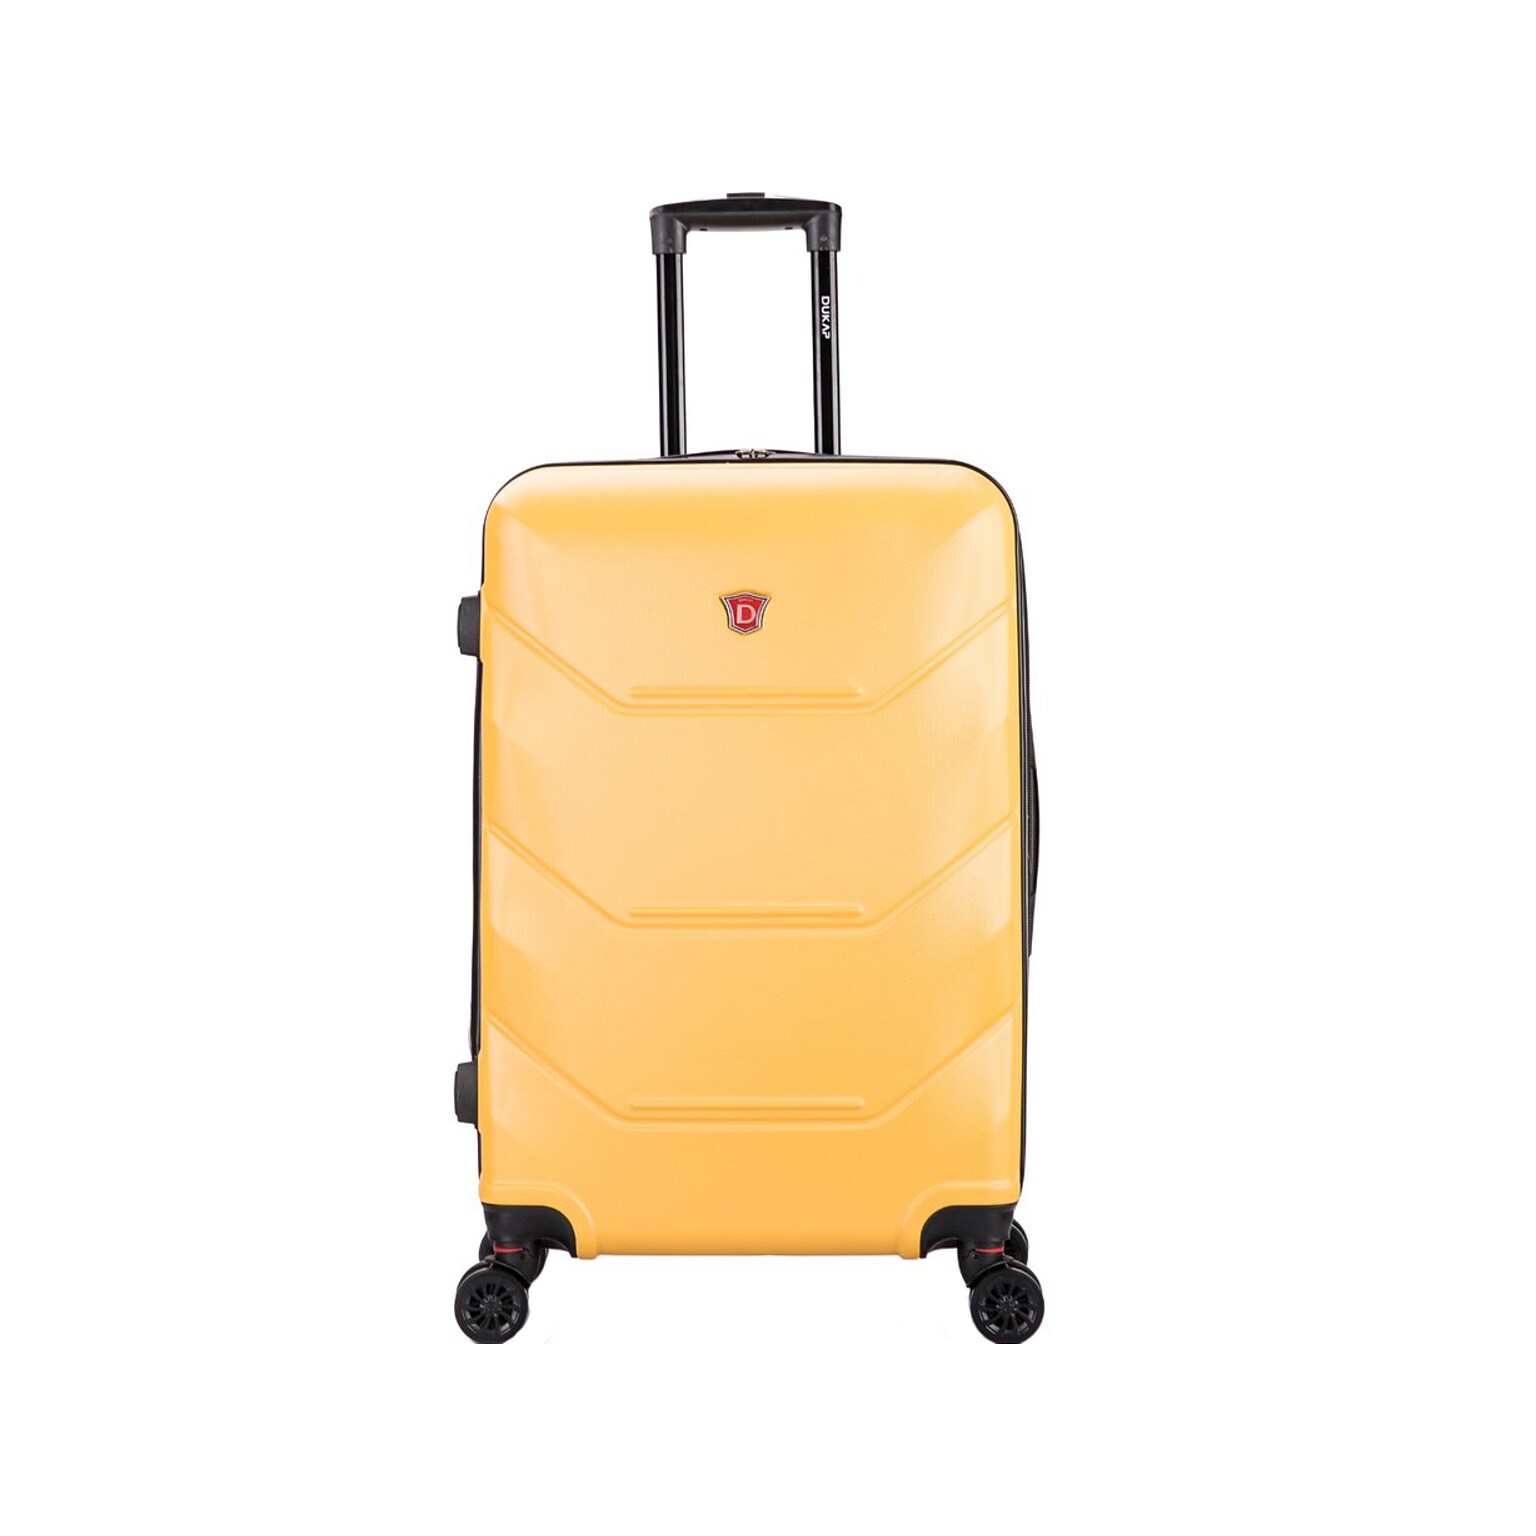 DUKAP Zonix 28.35 Hardside Suitcase, 4-Wheeled Spinner, Mustard (DKZON00M-MUS)